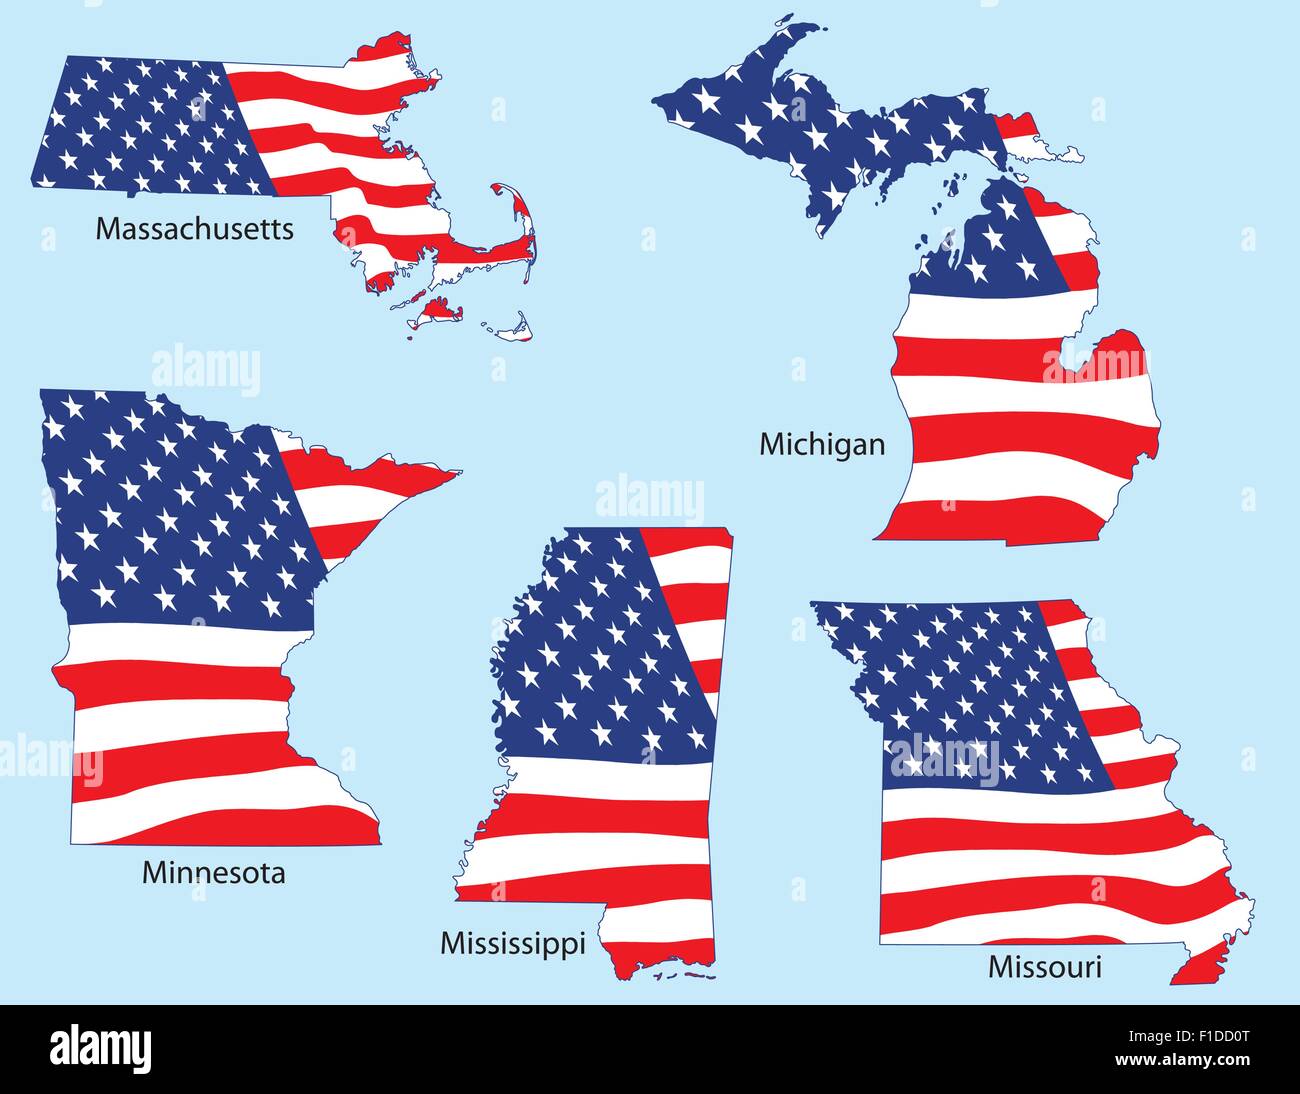 Massachusetts, Michigan, Minnesota, Mississippi et Missouri décrit avec drapeaux, chaque regroupées individuellement Illustration de Vecteur